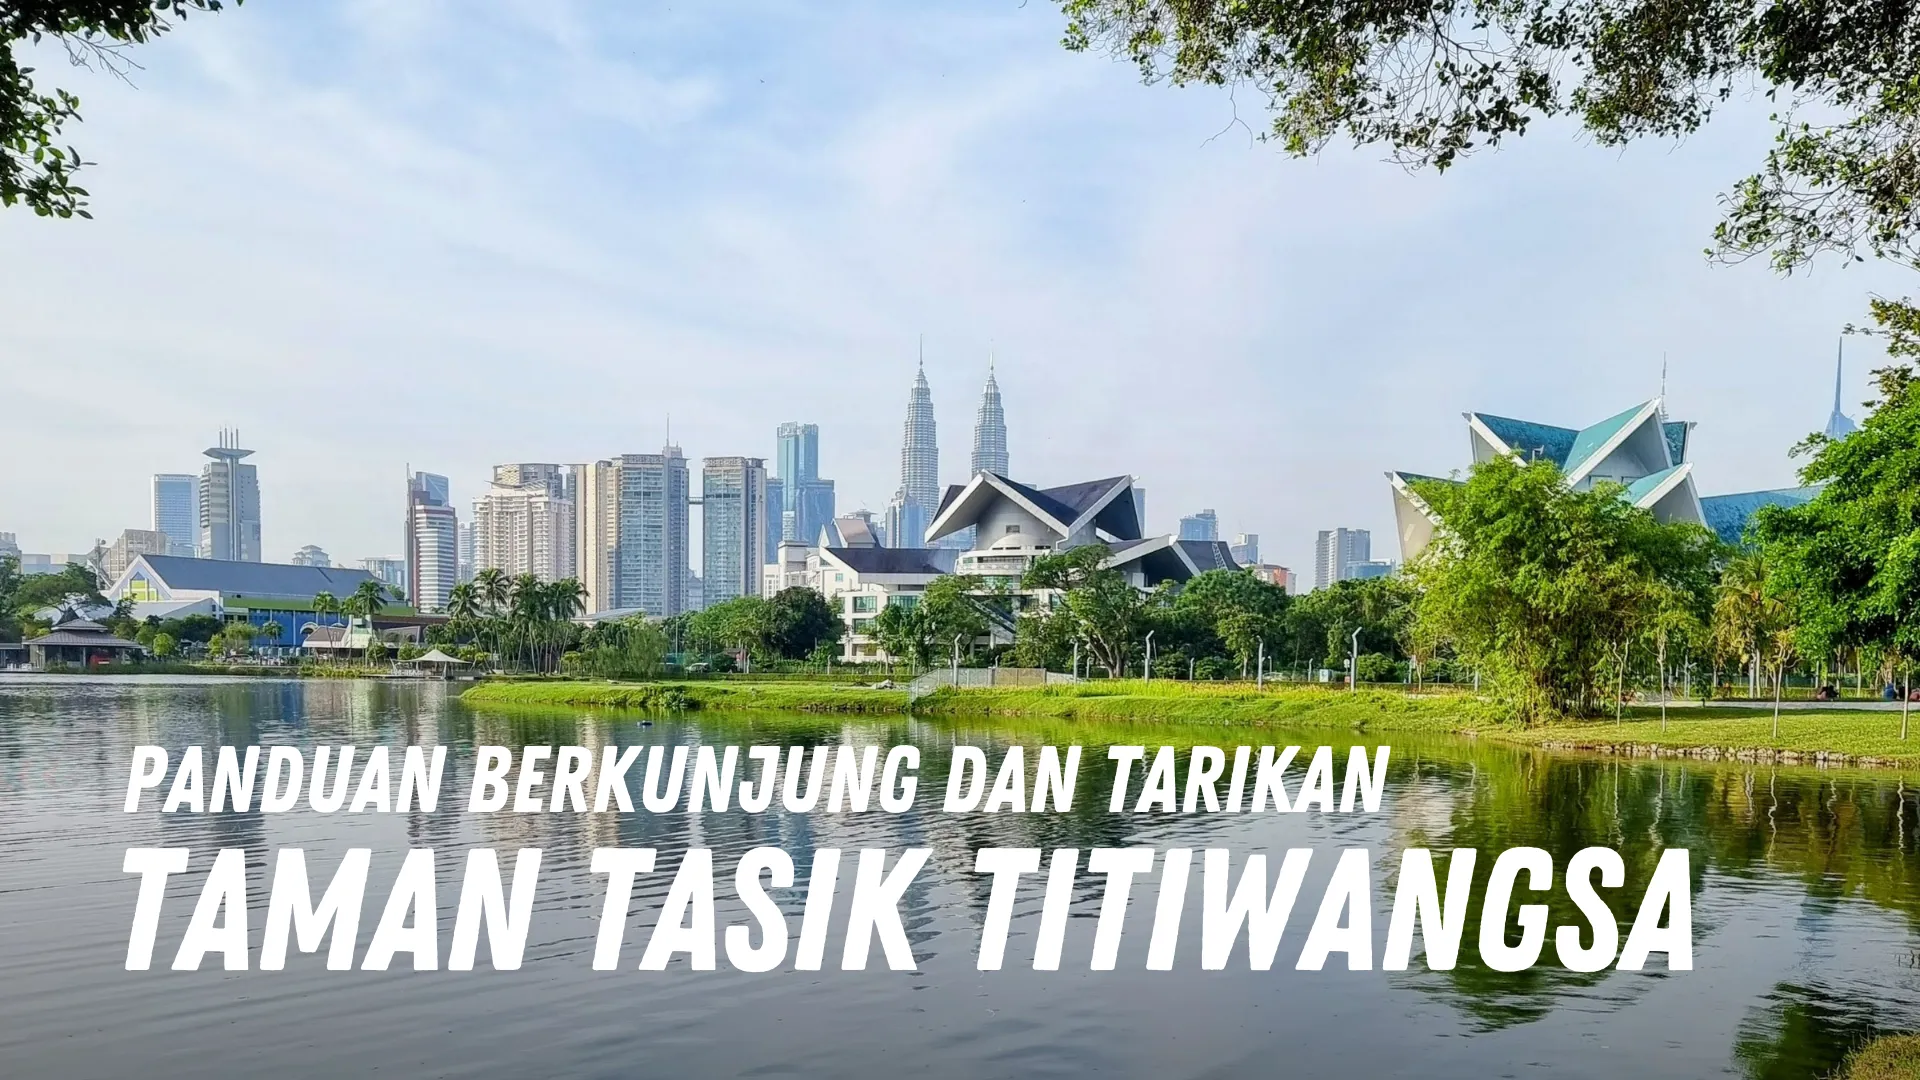 Review Taman Tasik Titiwangsa Malaysia